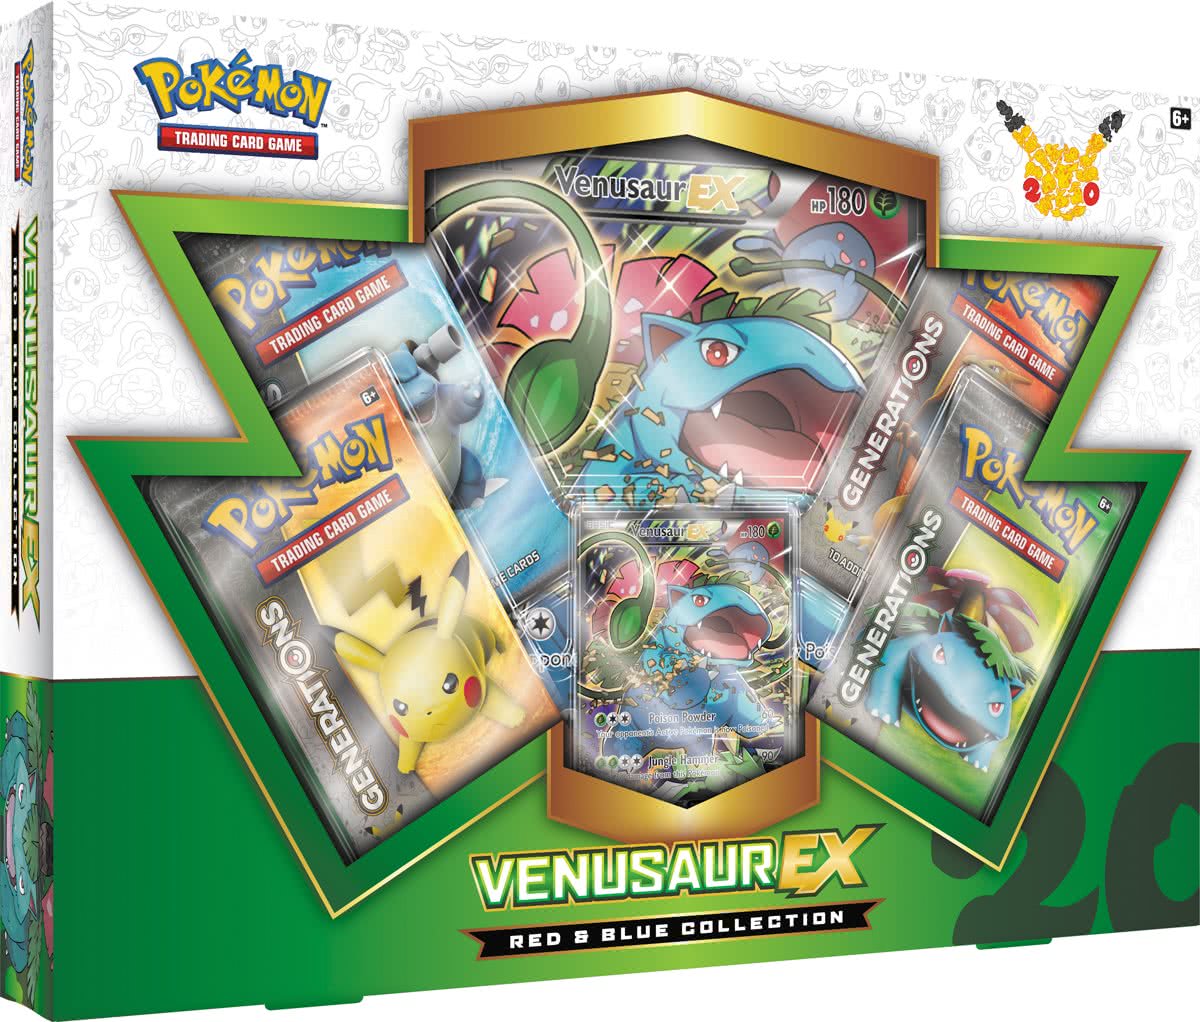 Pokemon 20th Anniversary Collection Box: Venusaur-EX (Pokemon), The Pokemon Company